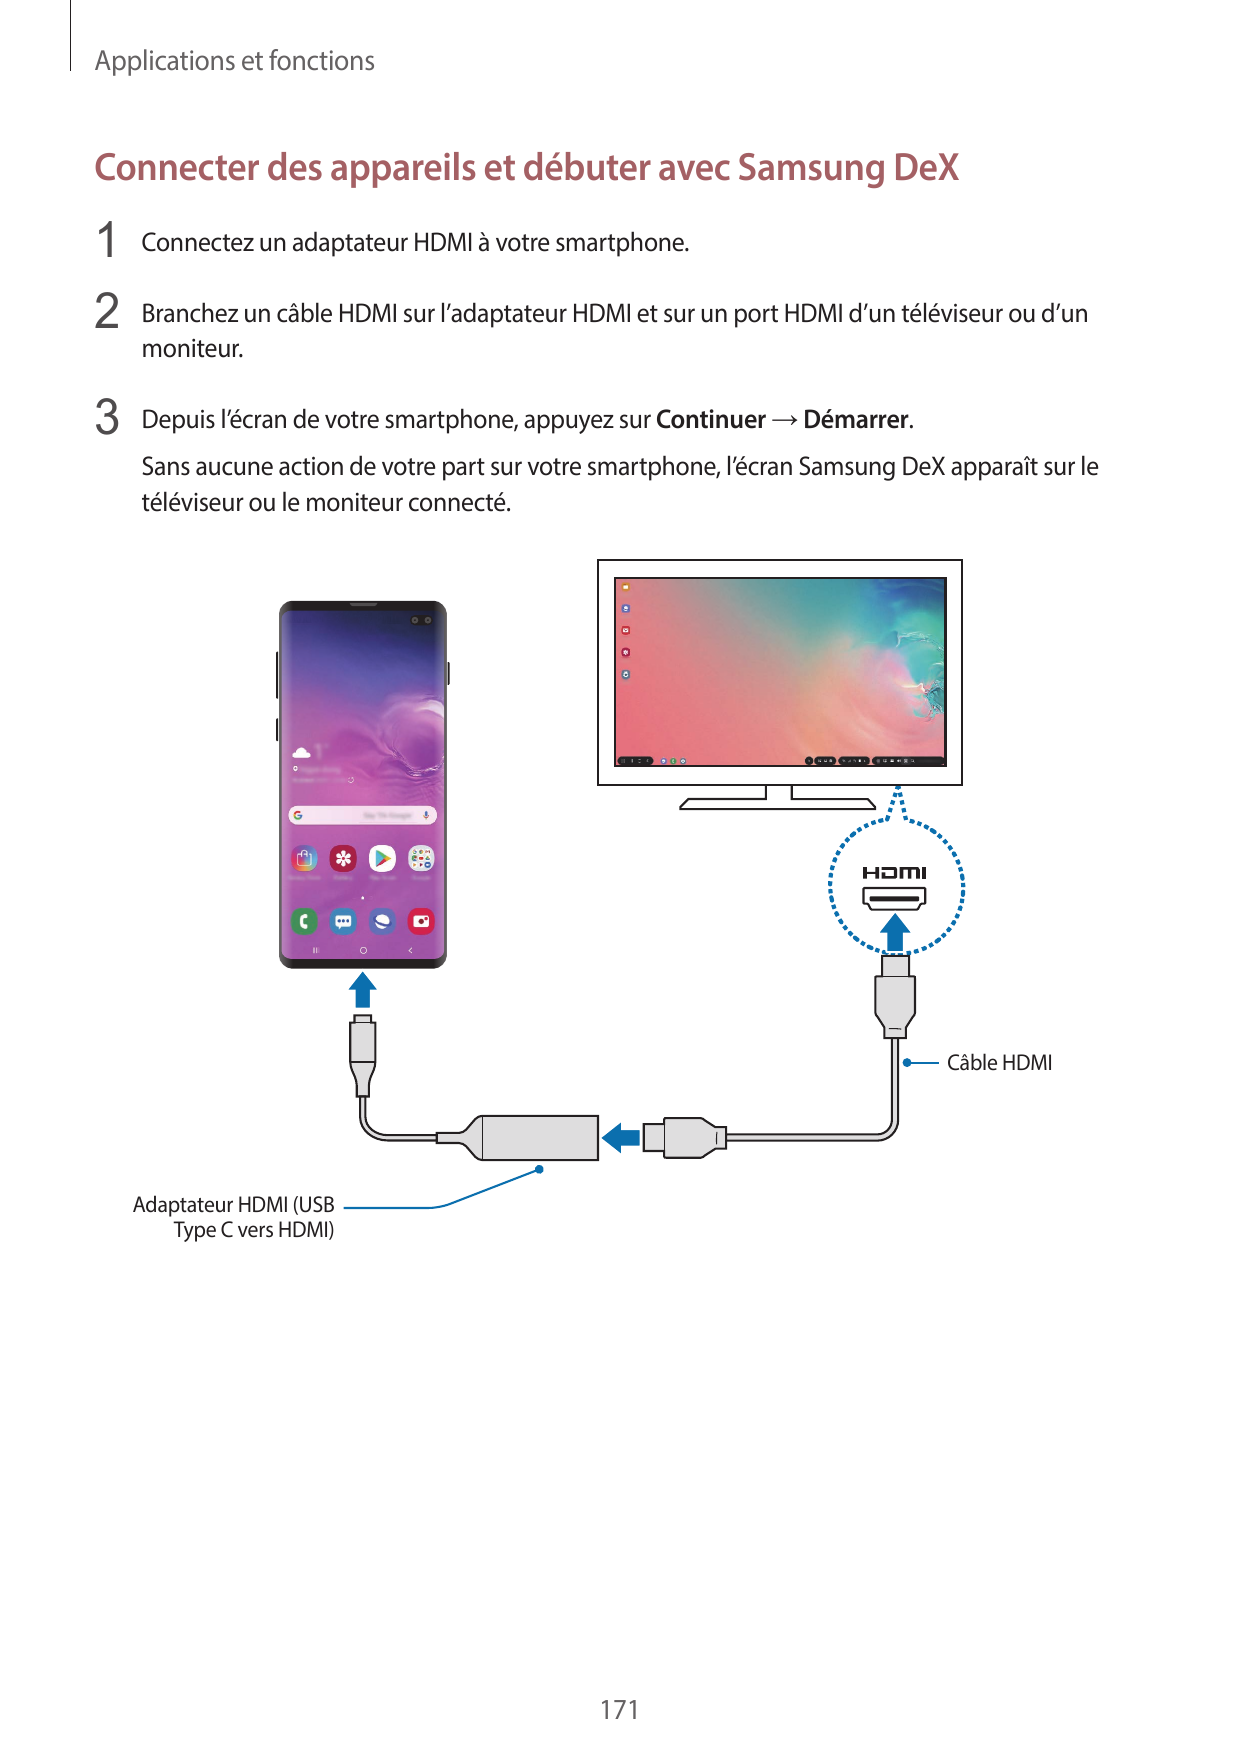 Applications et fonctionsConnecter des appareils et débuter avec Samsung DeX1 Connectez un adaptateur HDMI à votre smartphone.2 